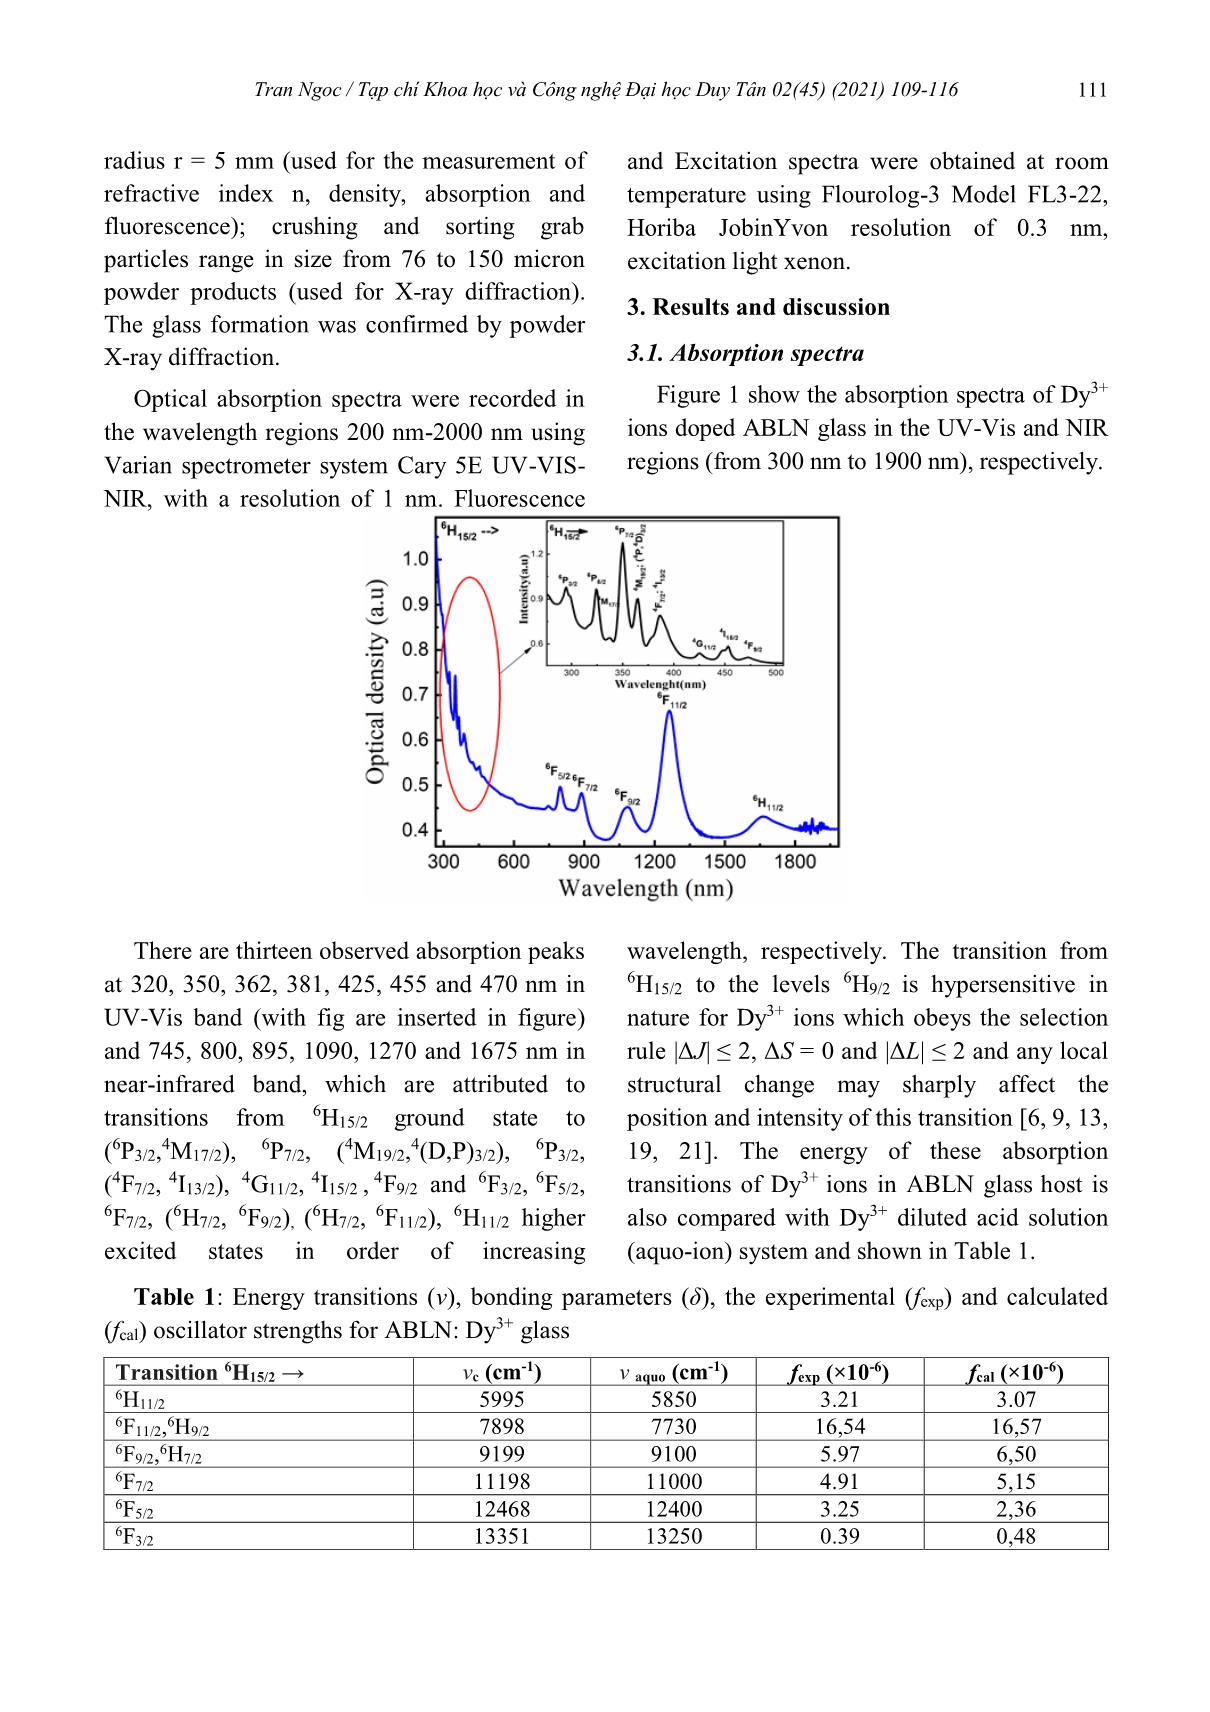 Sử dụng lý thuyết Judd-Ofelt để phân tích phổ về cấu trúc mạng của thủy tinh lithium-sodium aluminoborate glass pha tạp ion Dy+3 trang 3